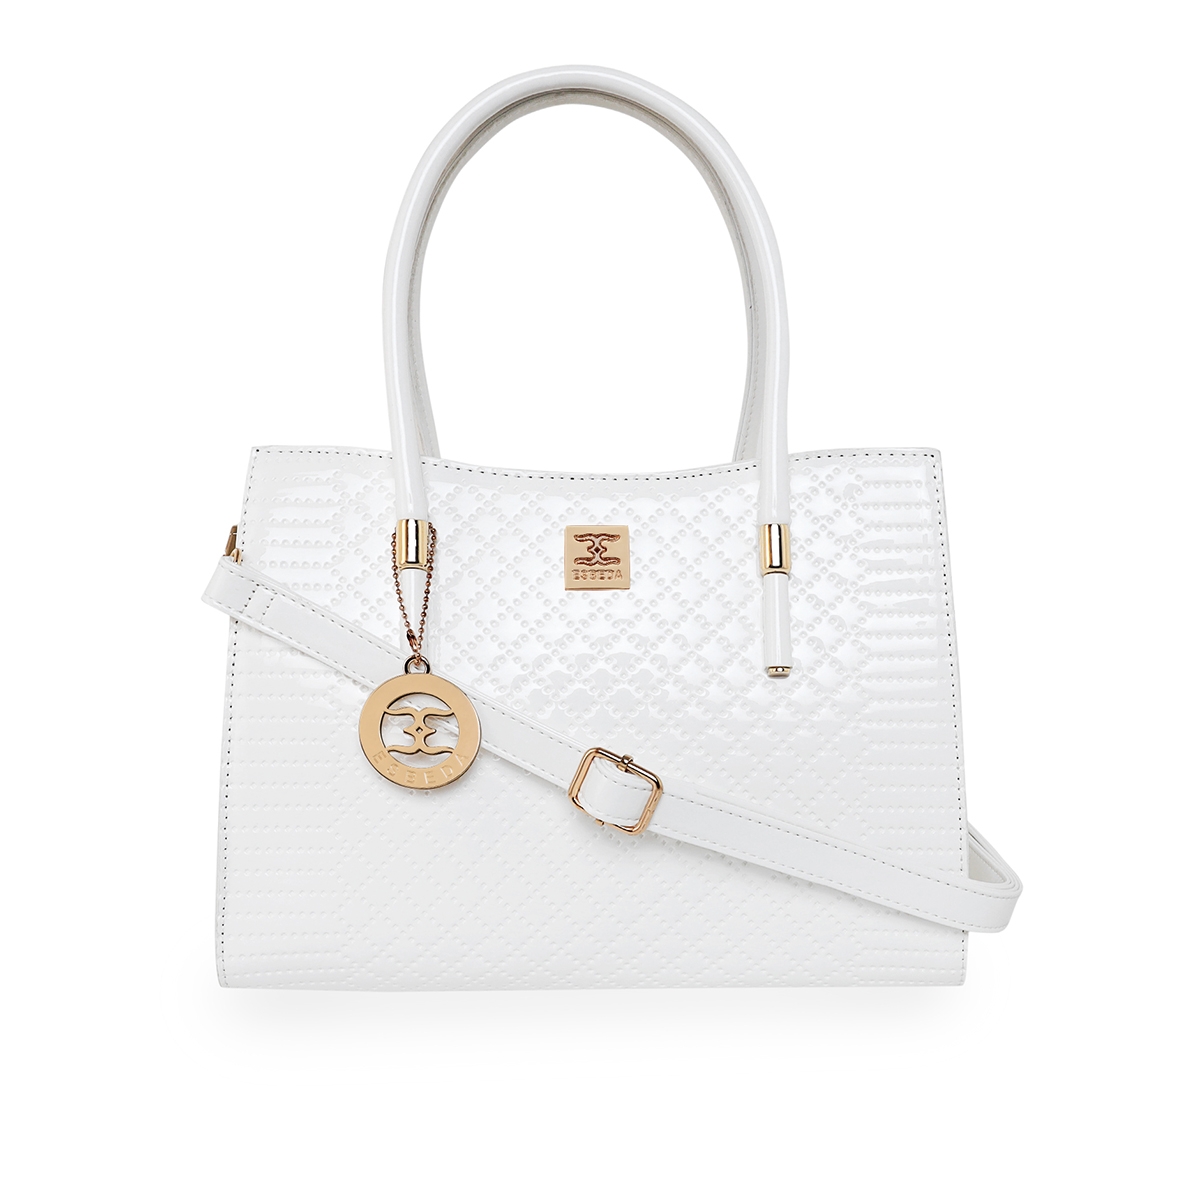 Buy Off White Handbags for Women by ESBEDA Online